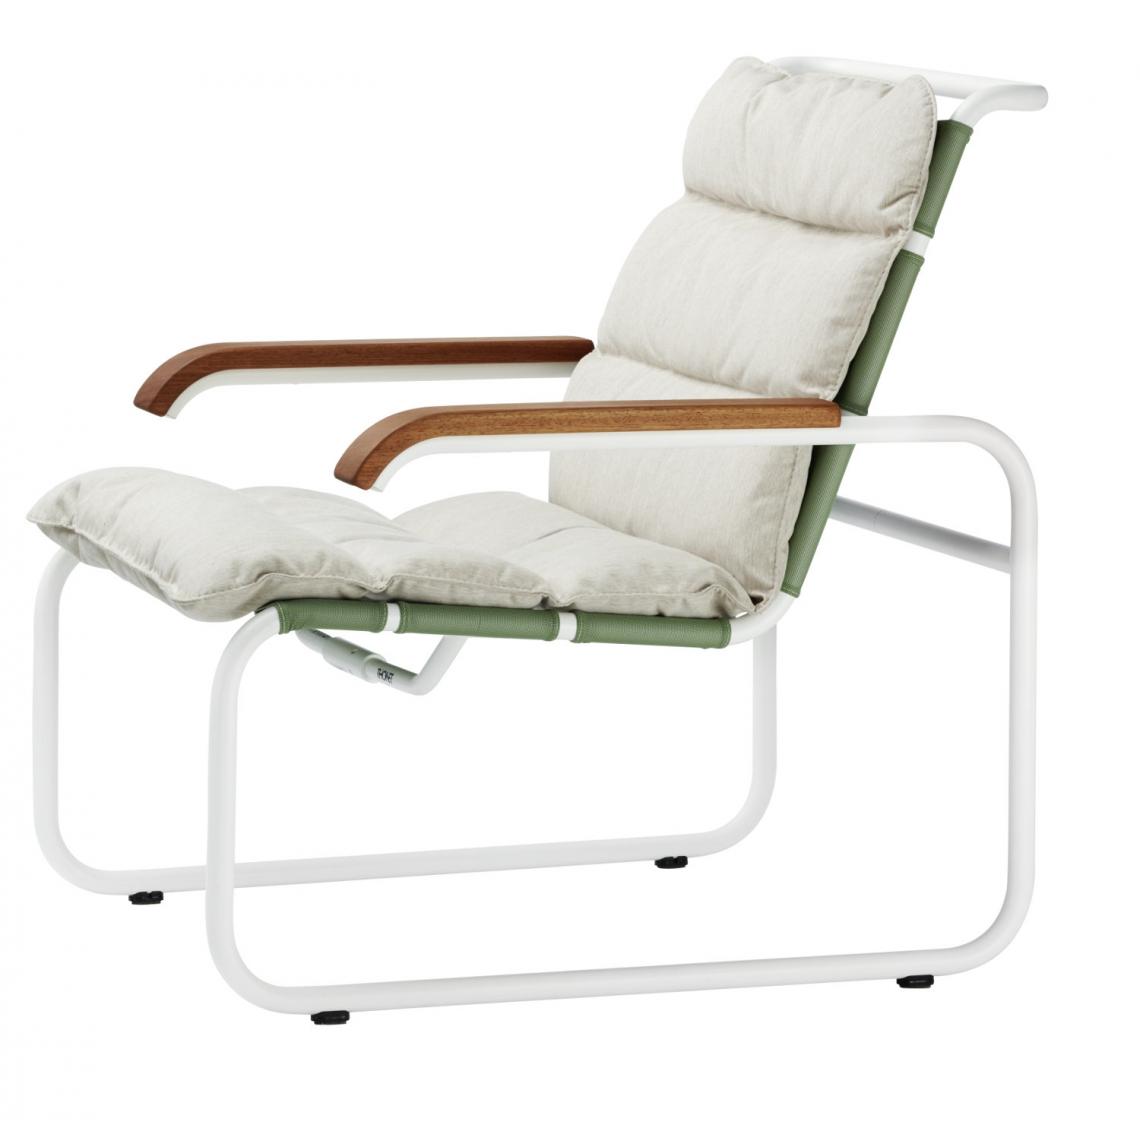 Thonet - Coussin pour chaise longue S 35 N All Seasons - limette - Coussins, galettes de jardin